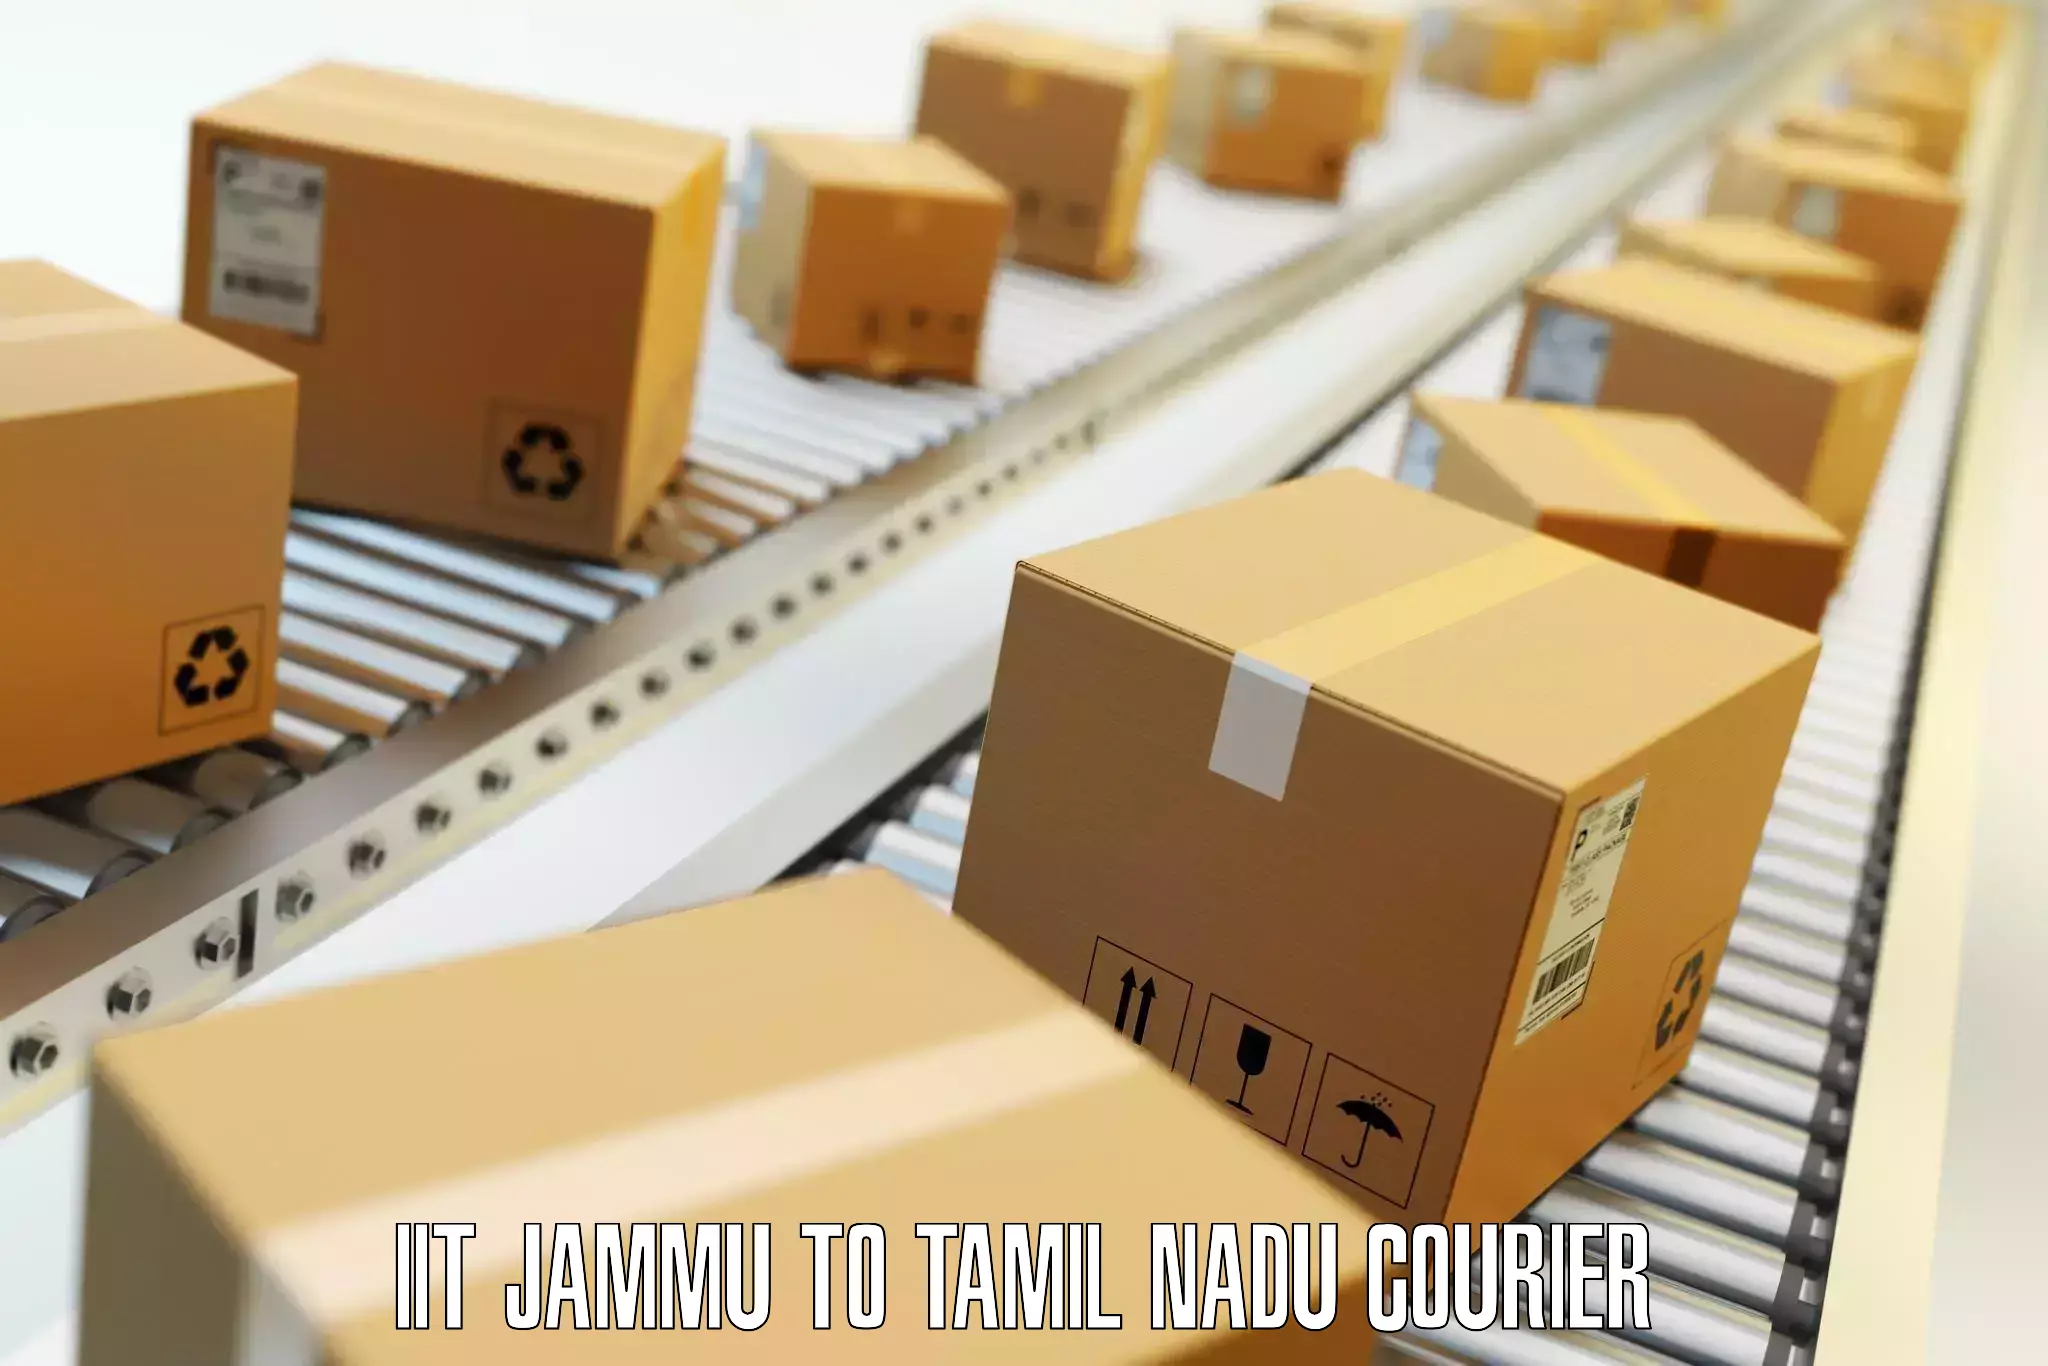 Emergency baggage service IIT Jammu to Tamil Nadu